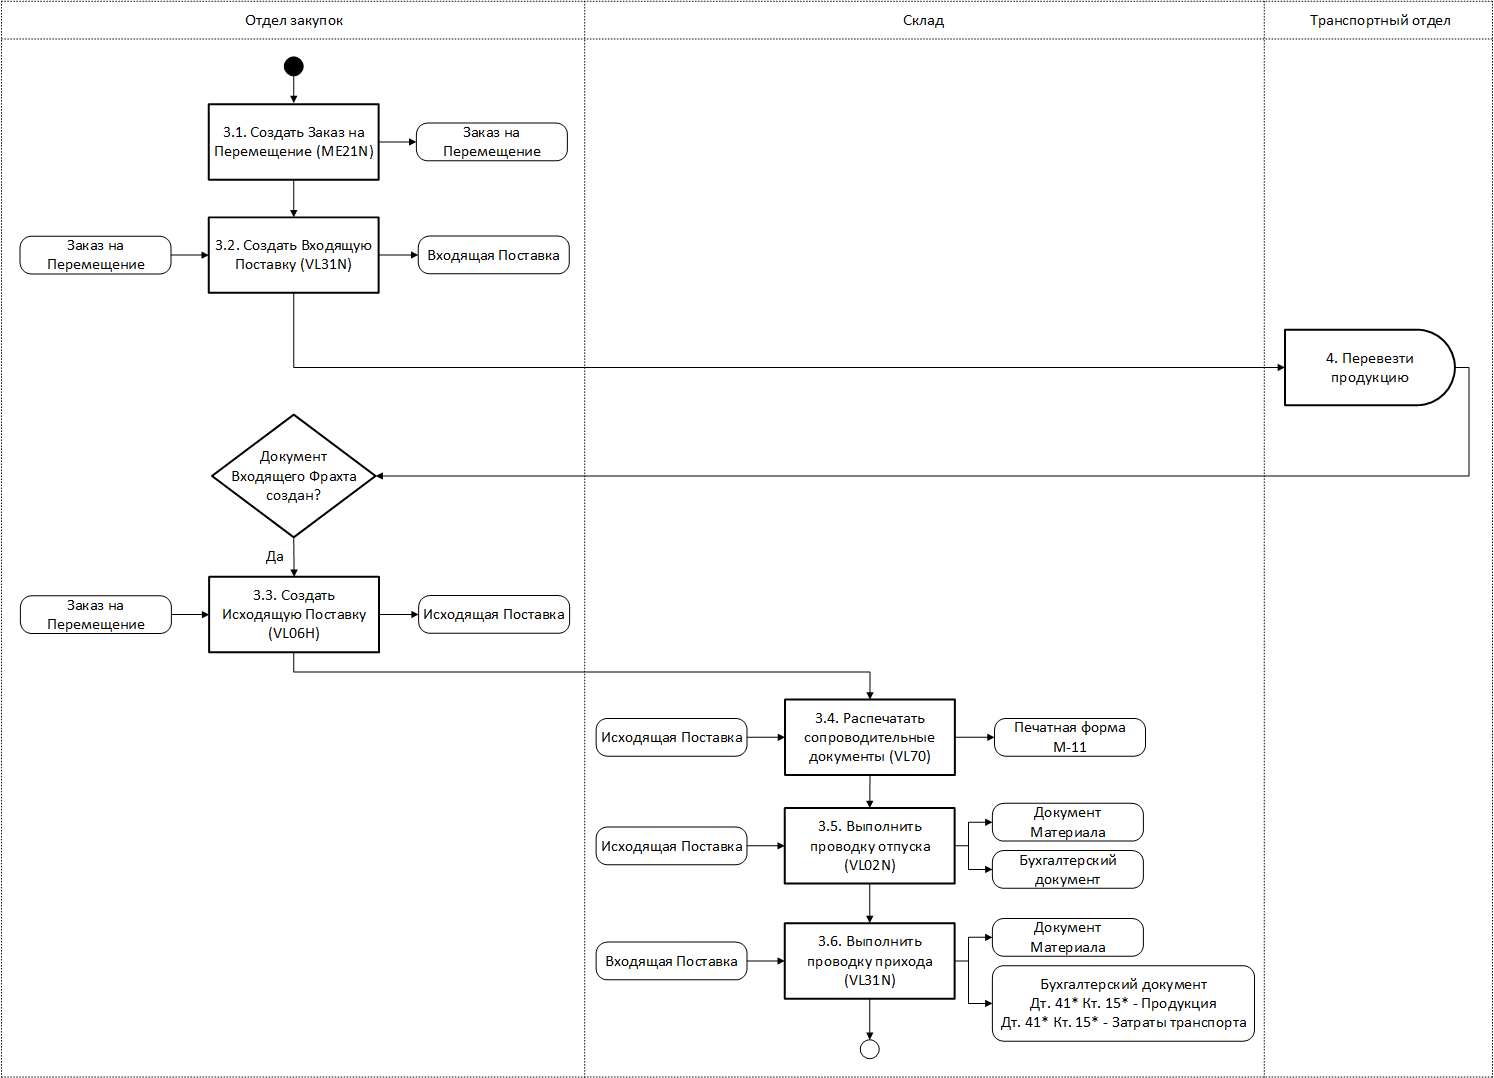 Шаги процесса межзаводских/межскладских перемещений и его взаимосвязь с подпроцессом транспорта в LE-TRA в нотации UML Activity Diagram на 2-м уровне детализации